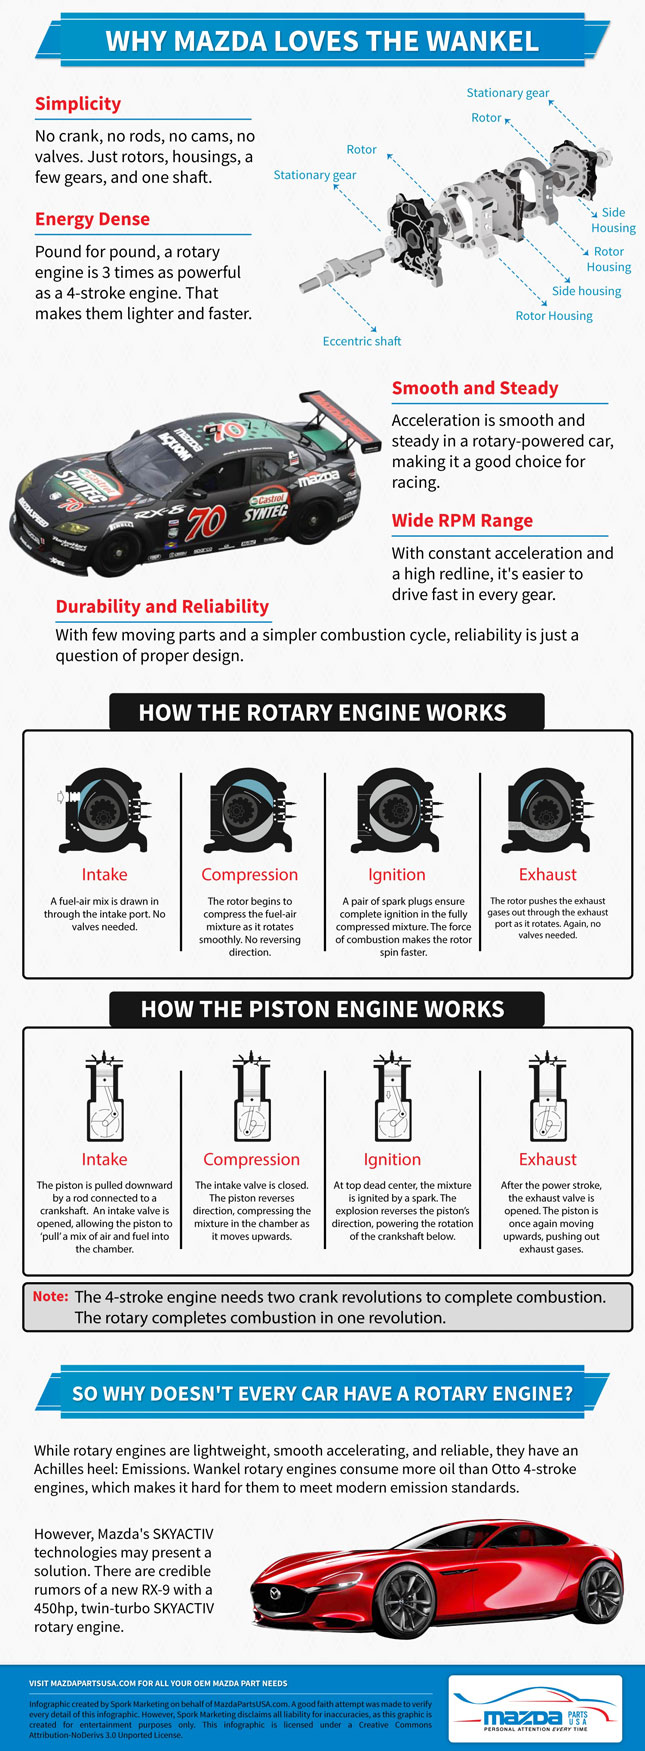 Mazda rotary infographic